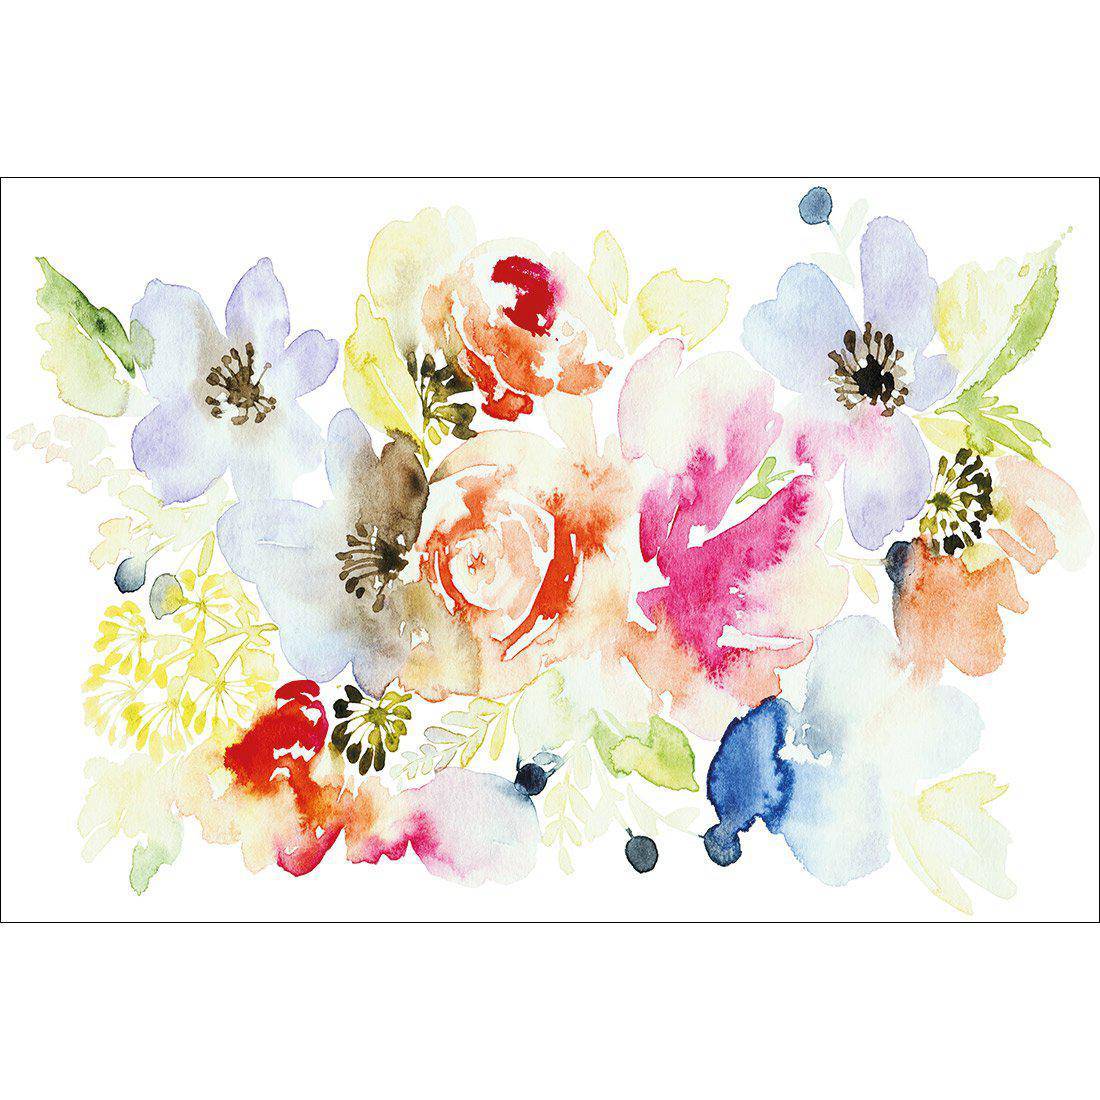 Floral Array Canvas Art-Canvas-Wall Art Designs-45x30cm-Canvas - No Frame-Wall Art Designs